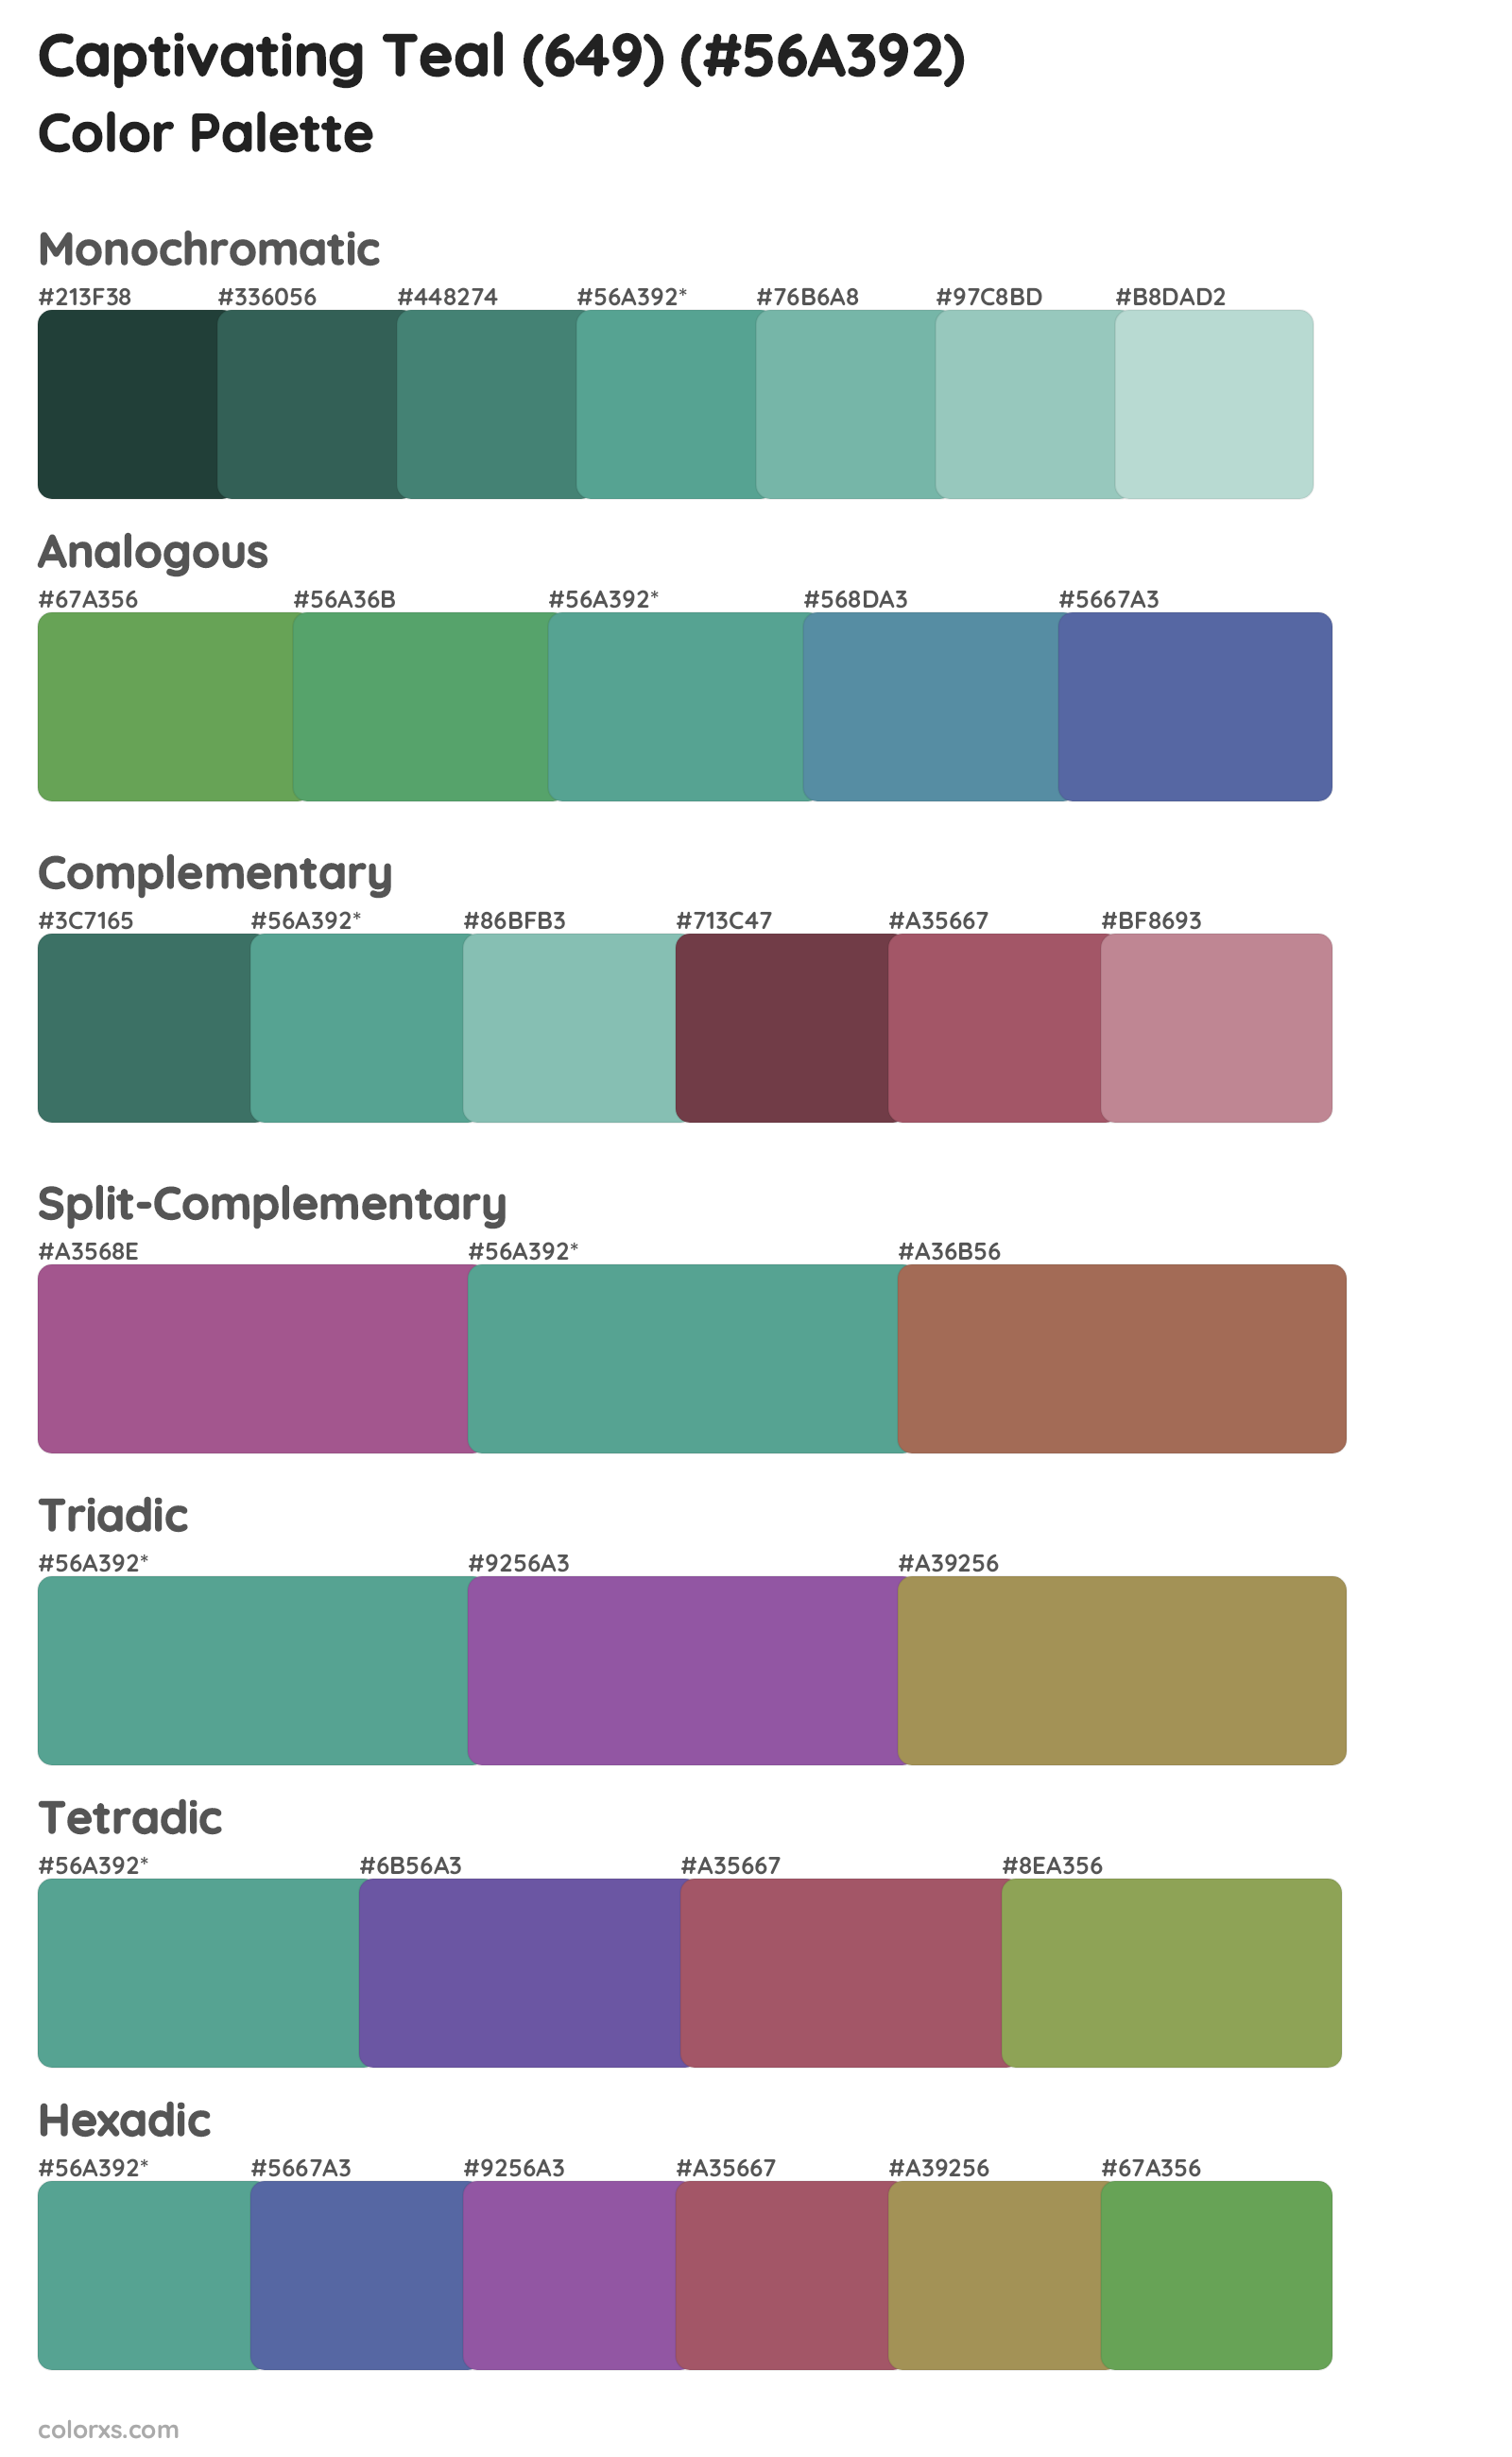 Captivating Teal (649) Color Scheme Palettes